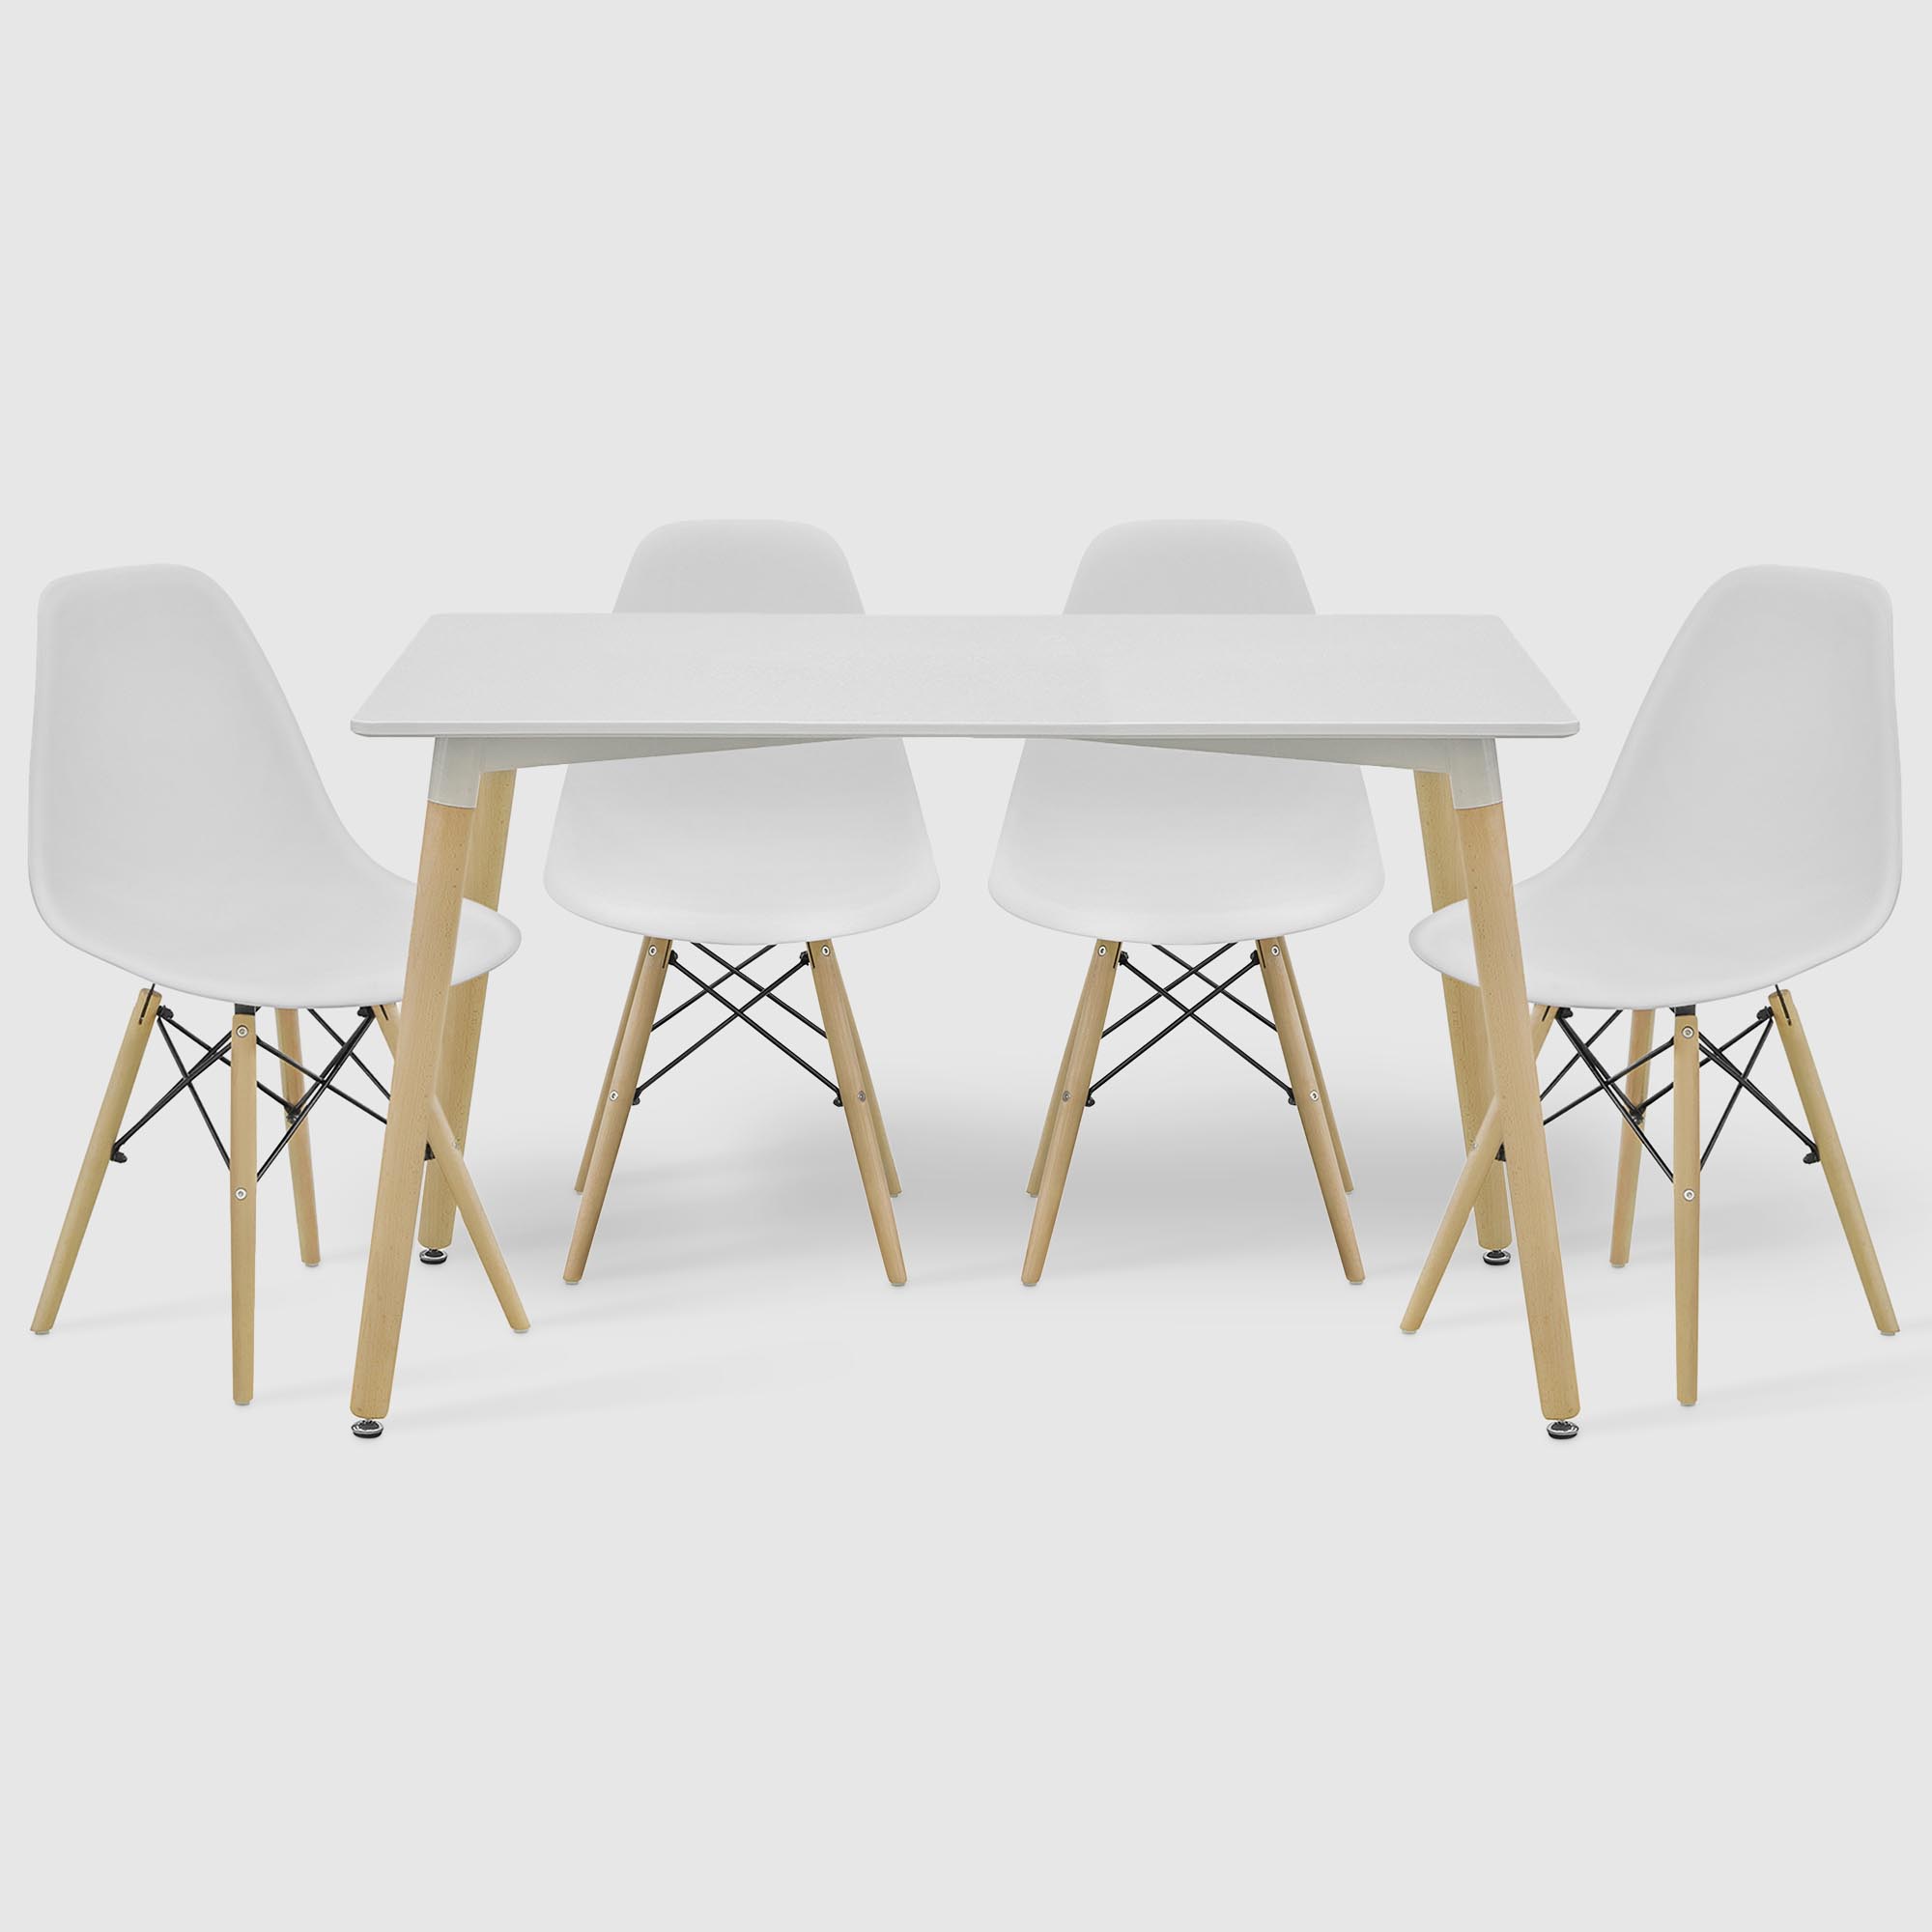 фото Комплект: стол langfang грейс + 4 стула оливия белый